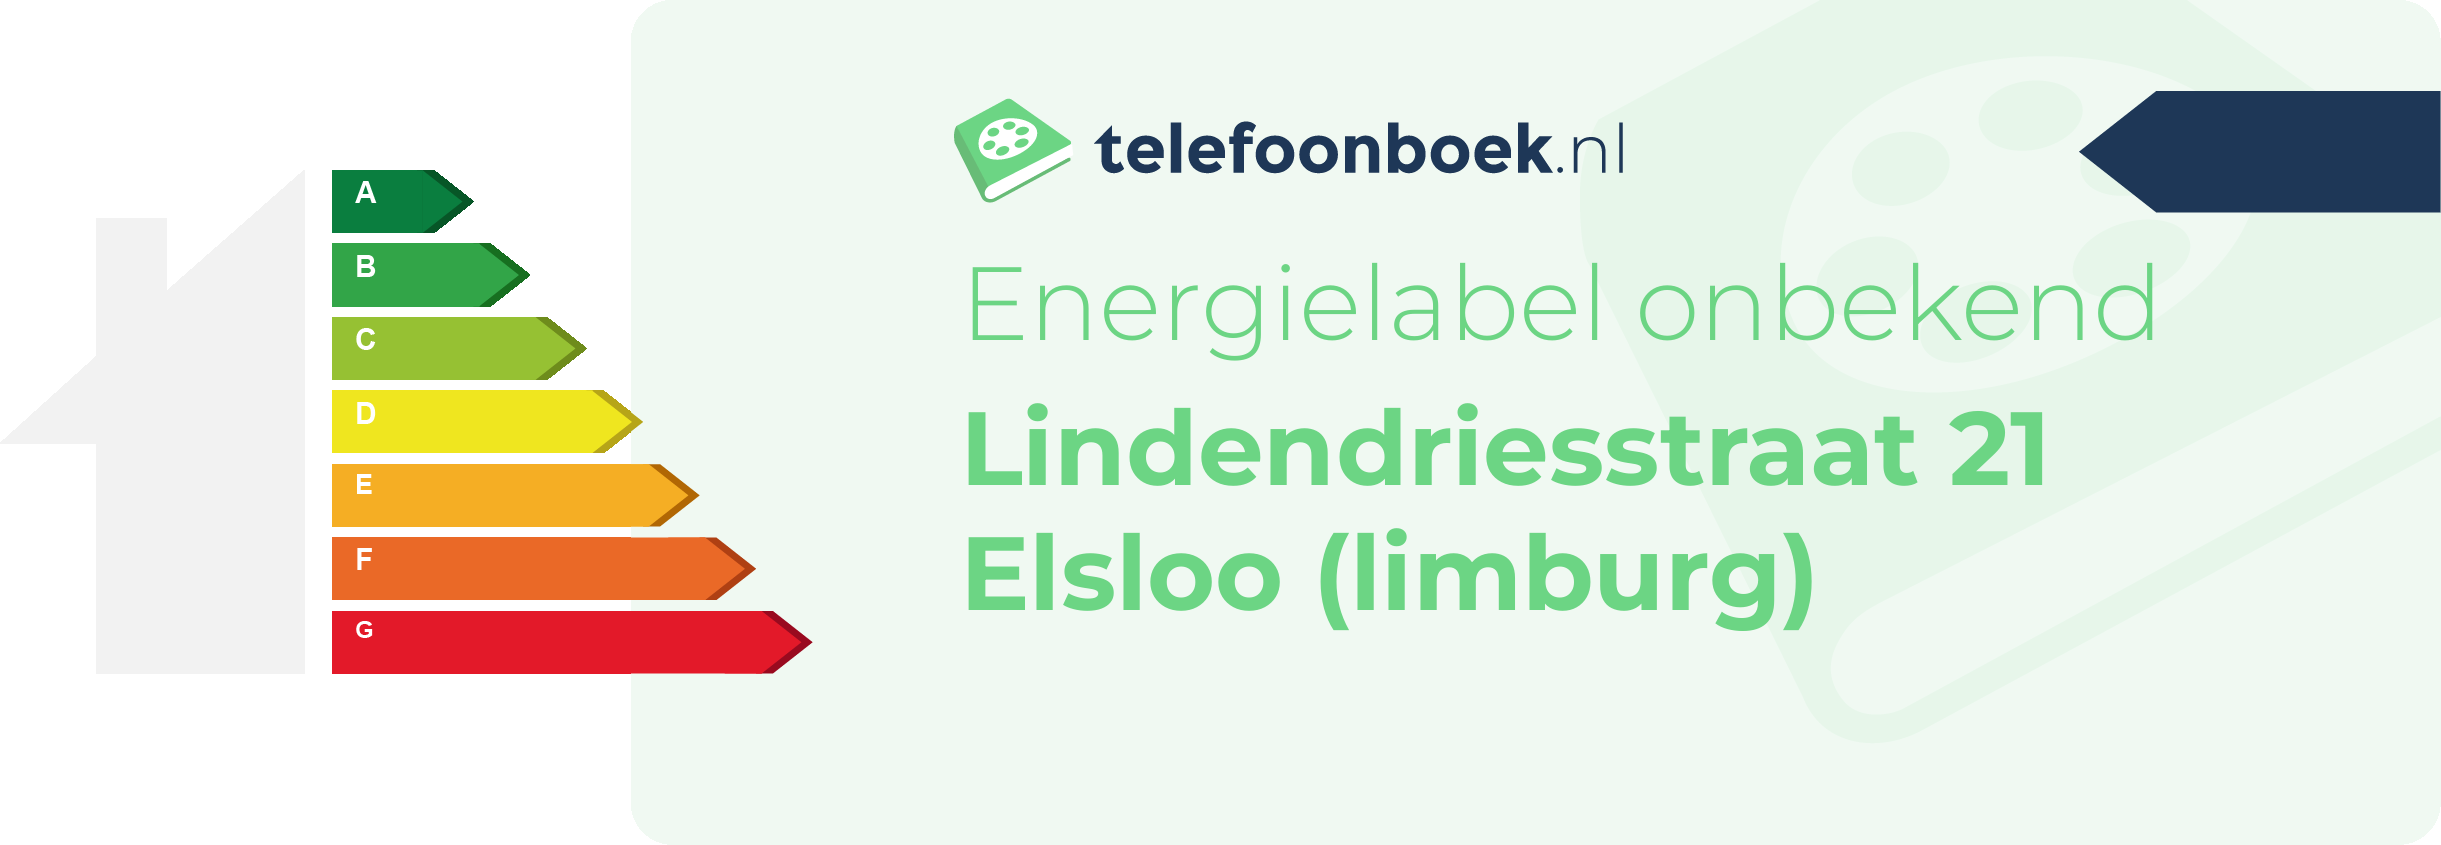 Energielabel Lindendriesstraat 21 Elsloo (Limburg)